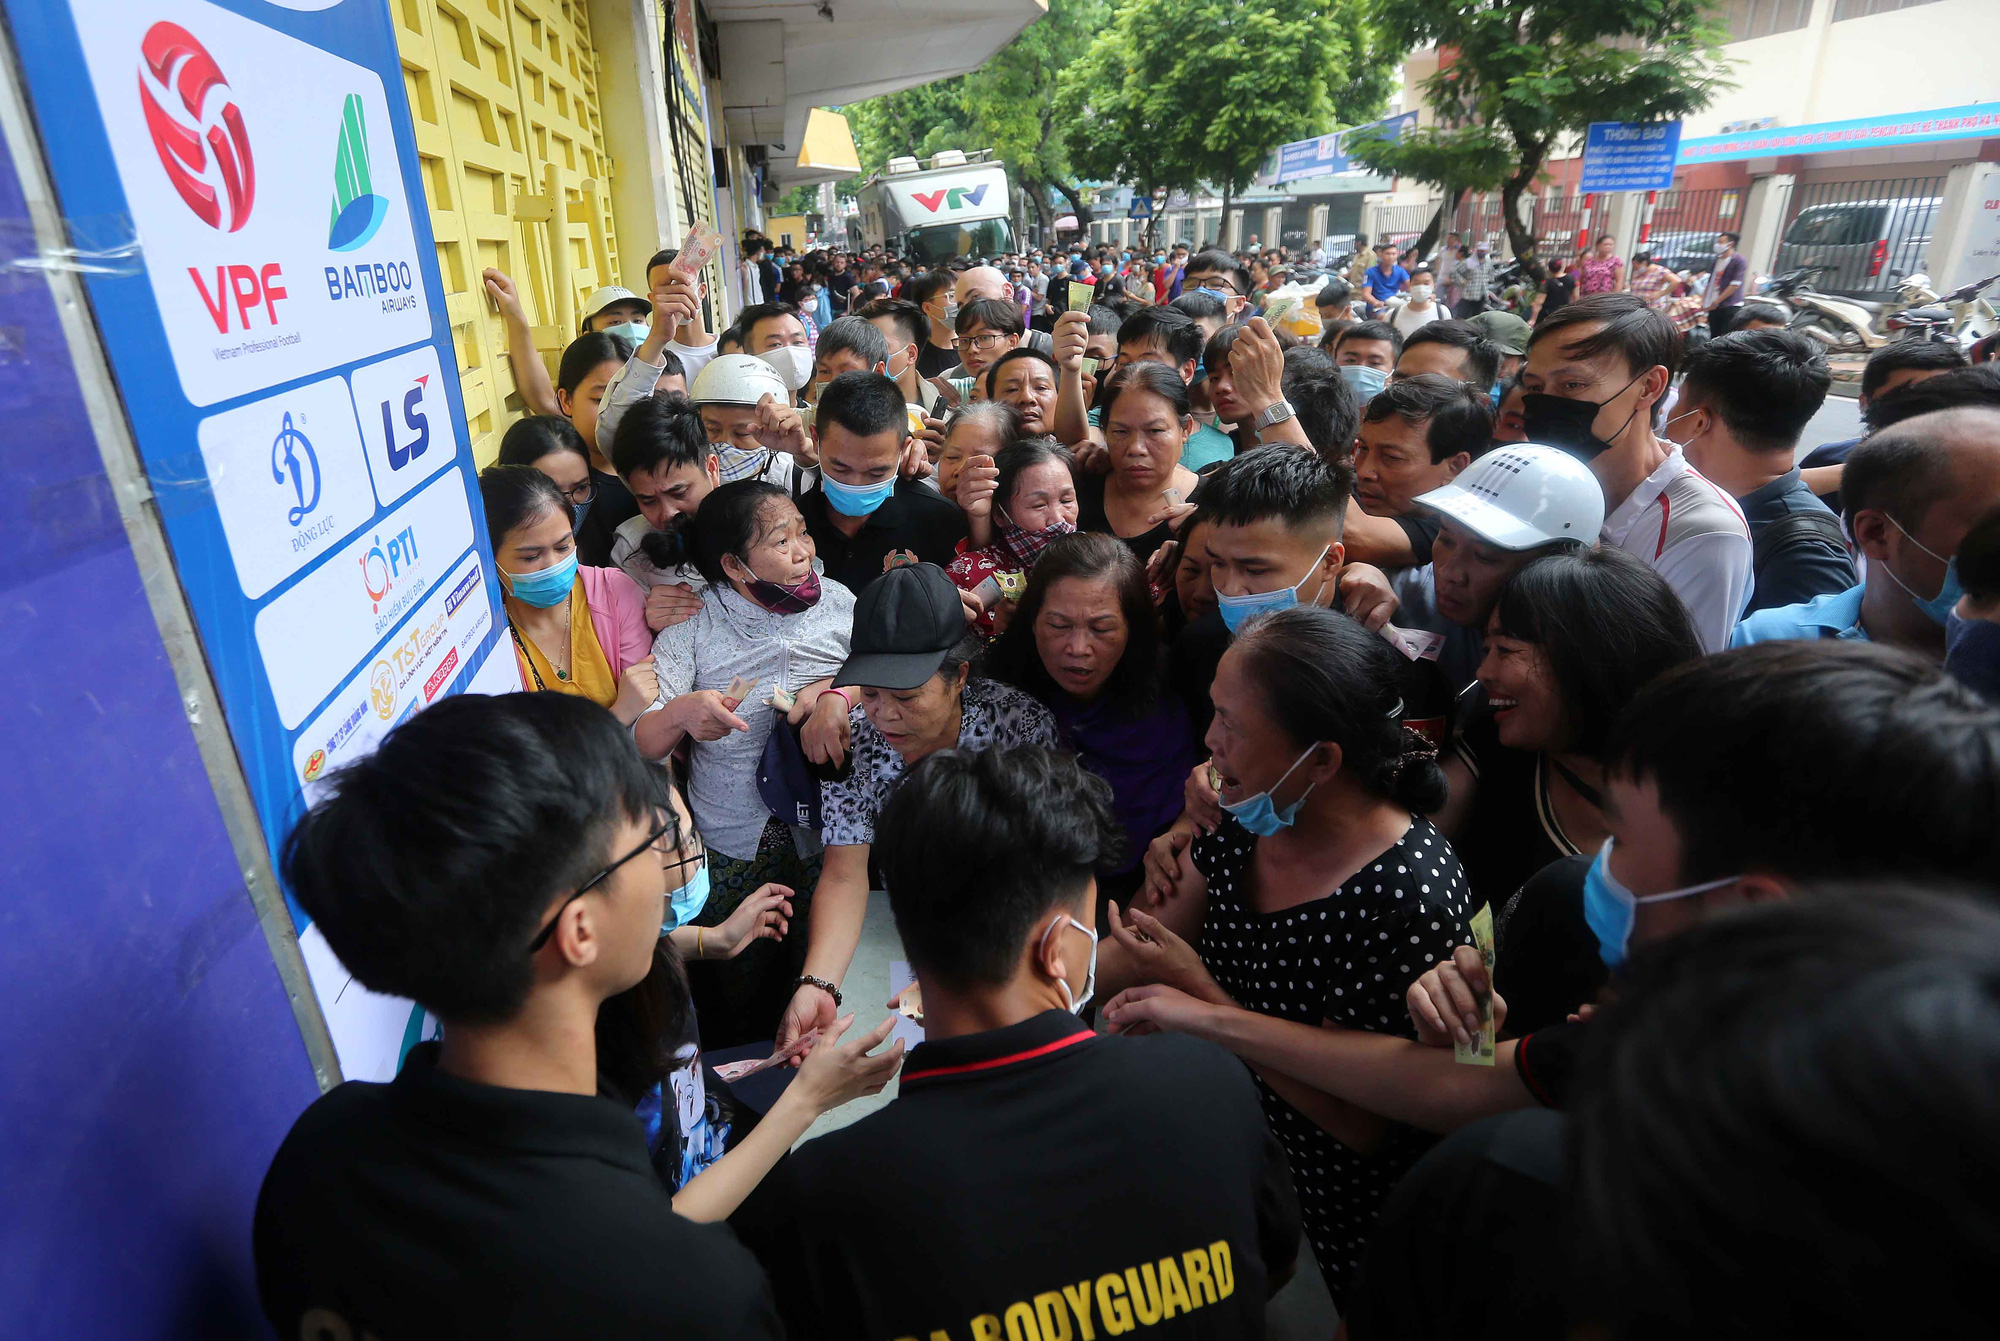 Phe vé và người hâm mộ chen lấn mua vé vào xem trận chung kết Cúp QG 2020 giữa Hà Nội FC và Viettel. Ảnh: Hải Đăng